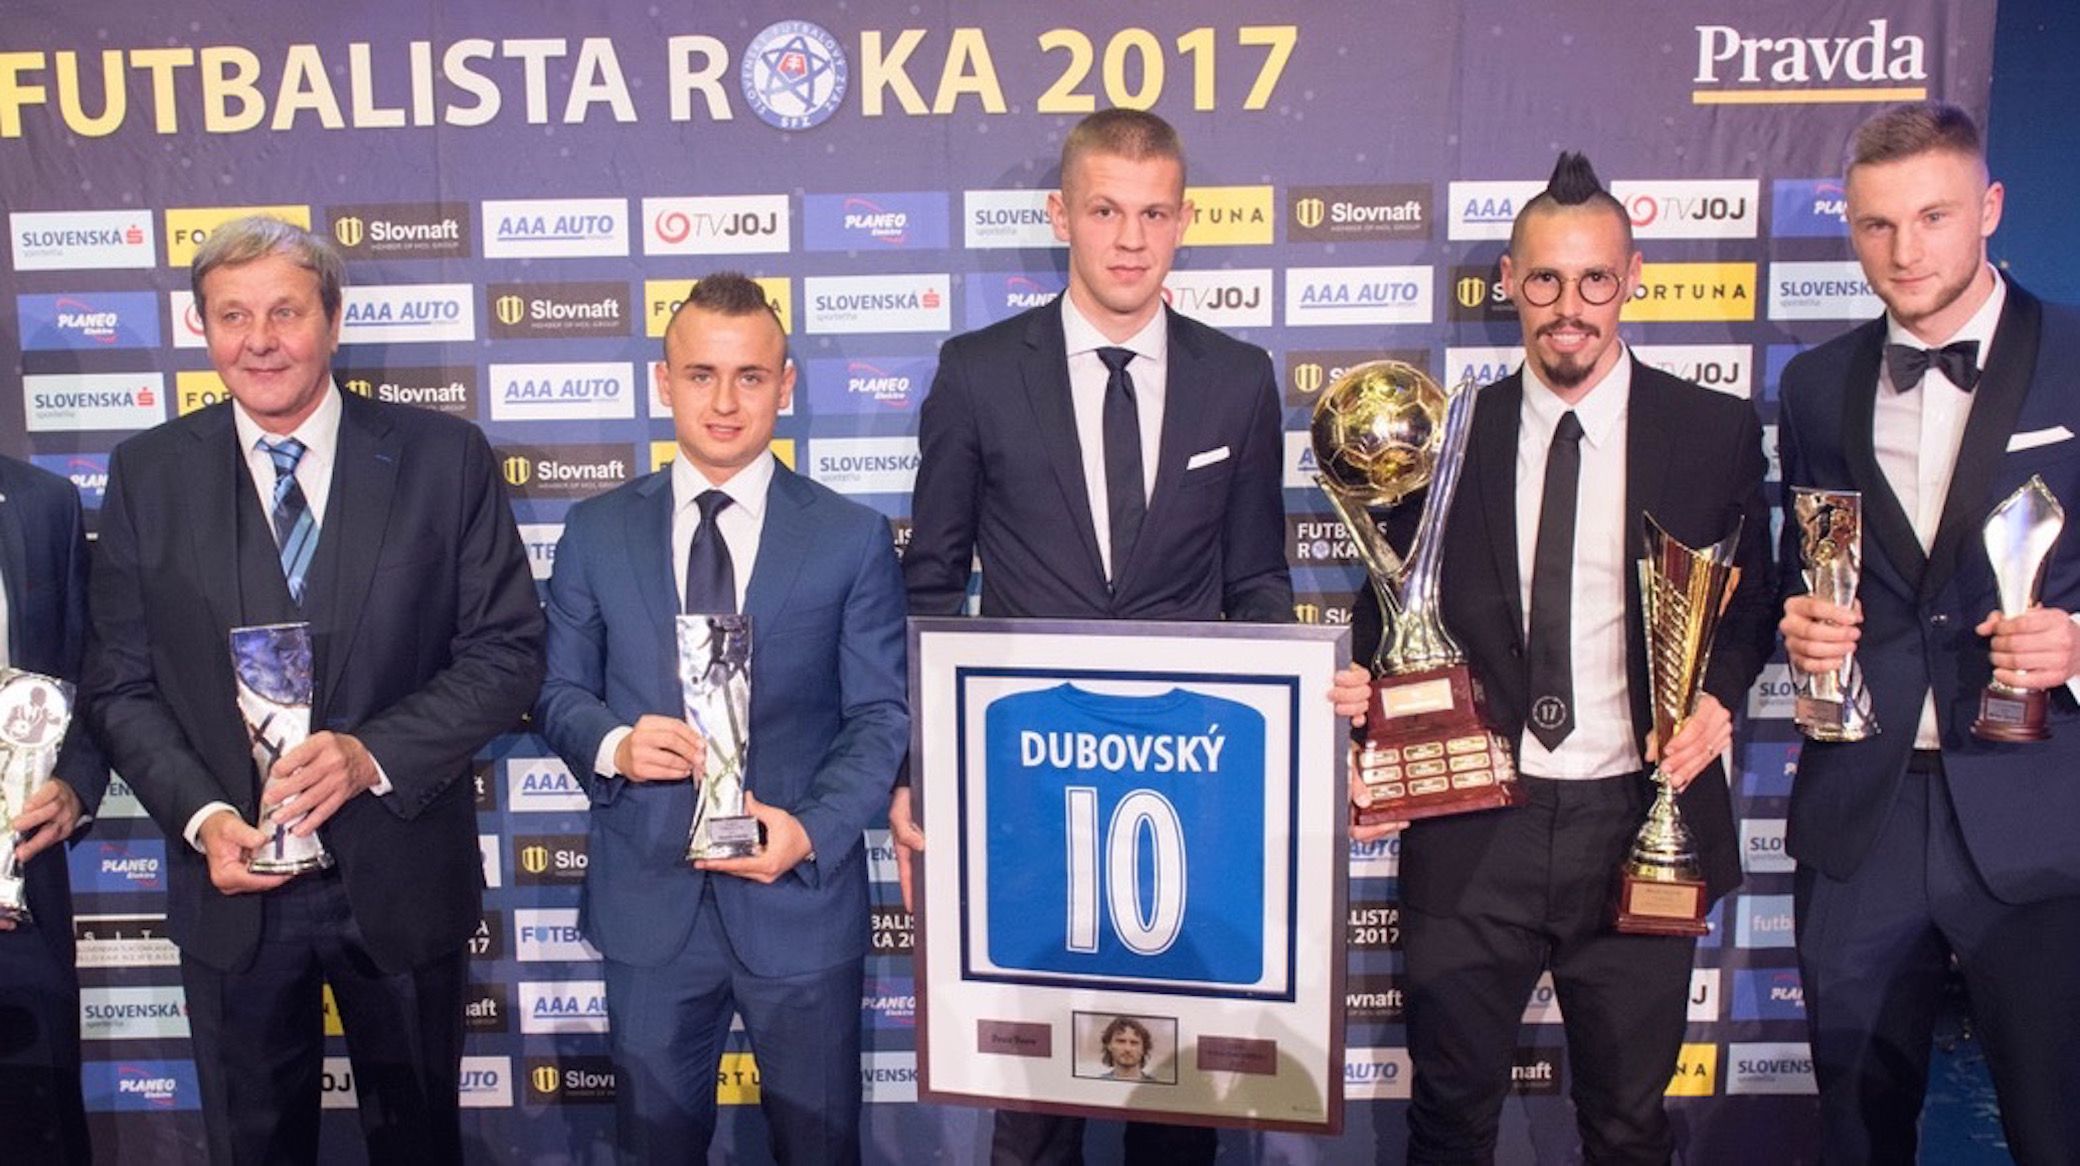 Denis Vavro årets U21 Spiller i Slovakiet